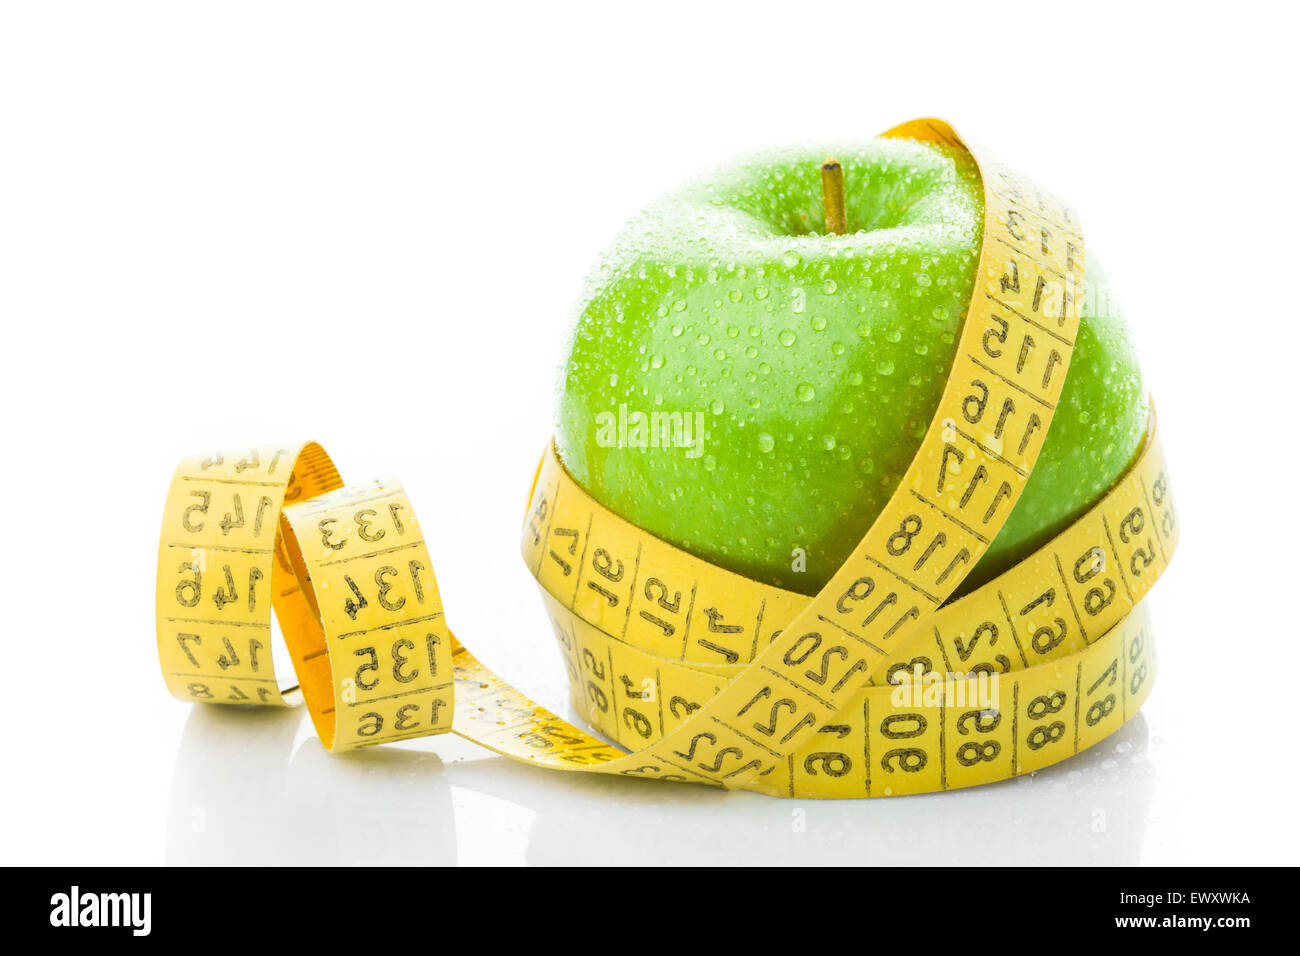 Grüner Apfel mit Maßband auf weißem Hintergrund Stockfoto